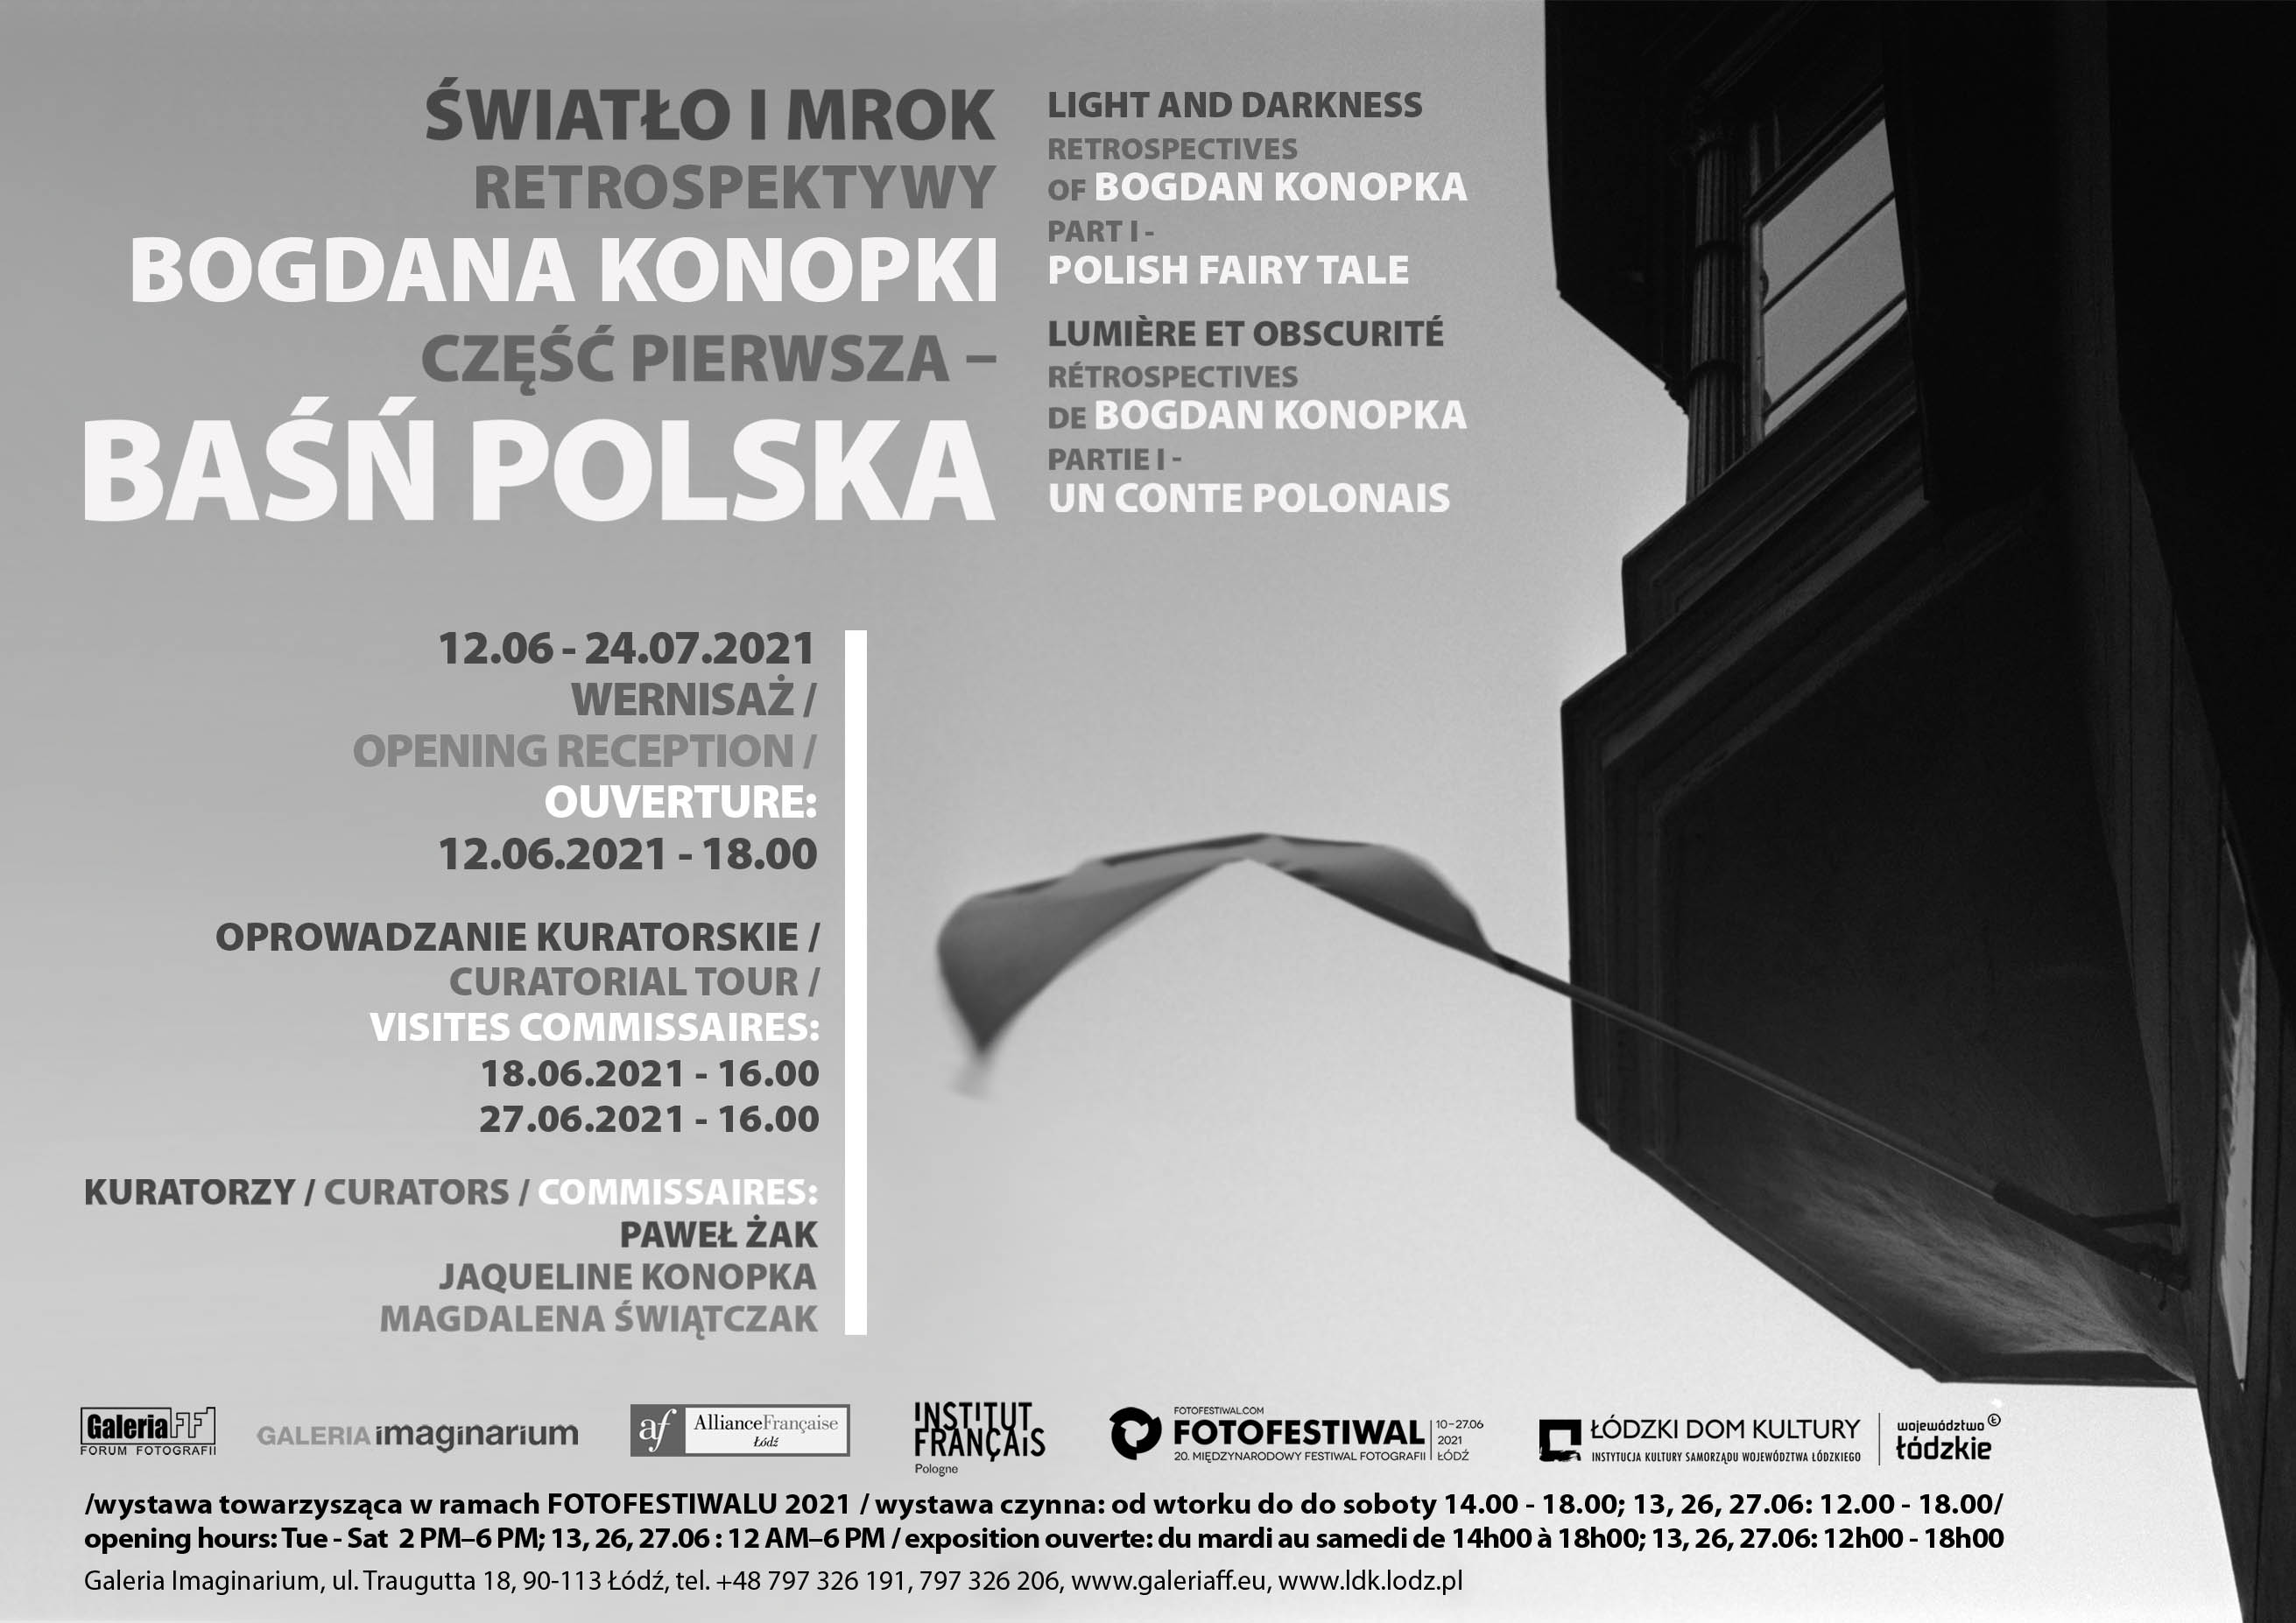 Light and darkness retrospectives of Bogdan Konopka -- an invitation